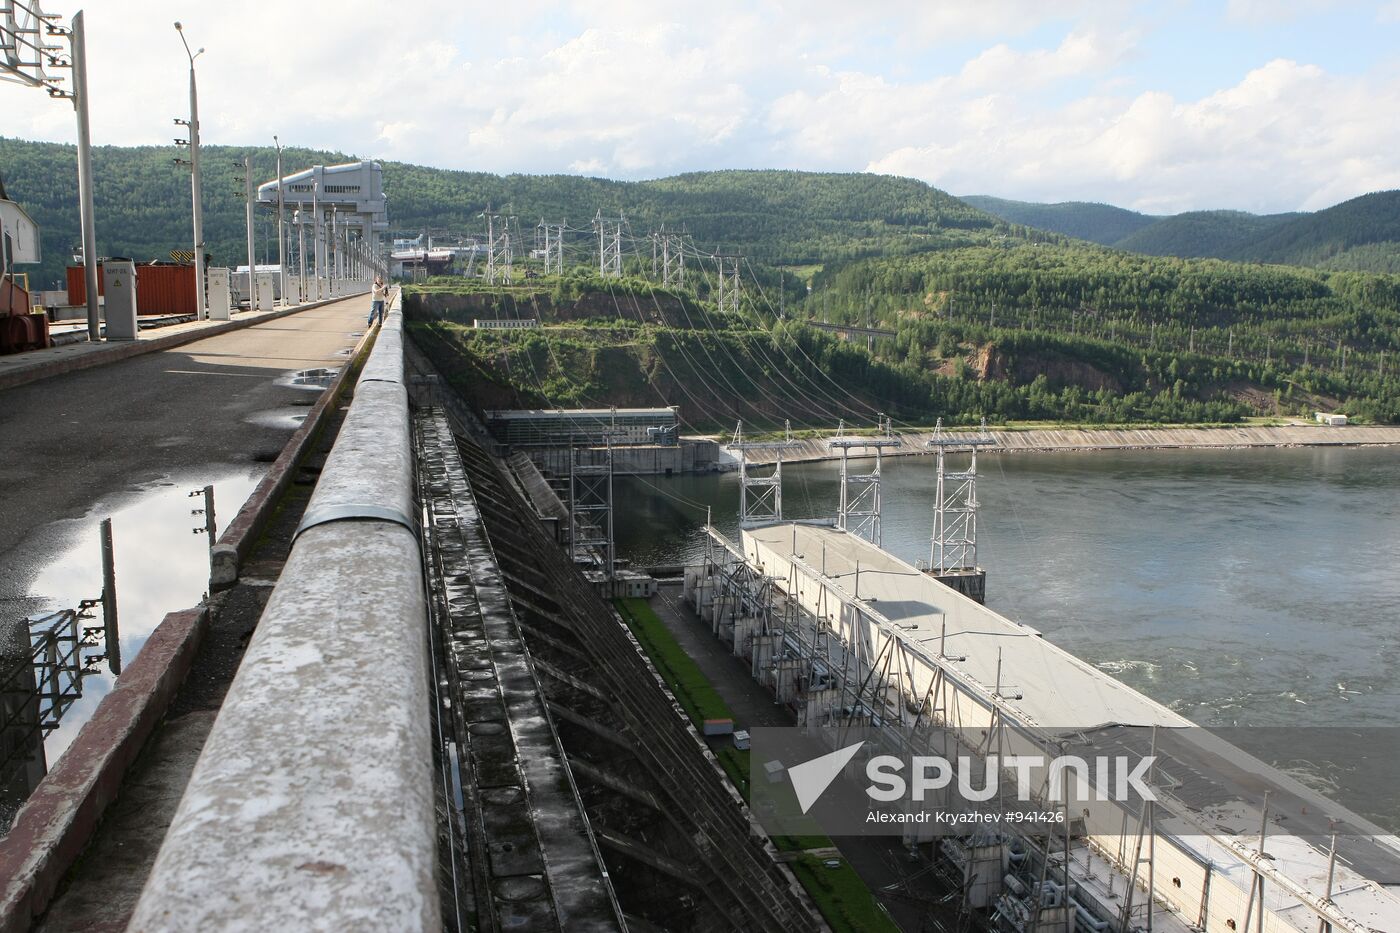 Krasnoyarsk Hydro Power Station